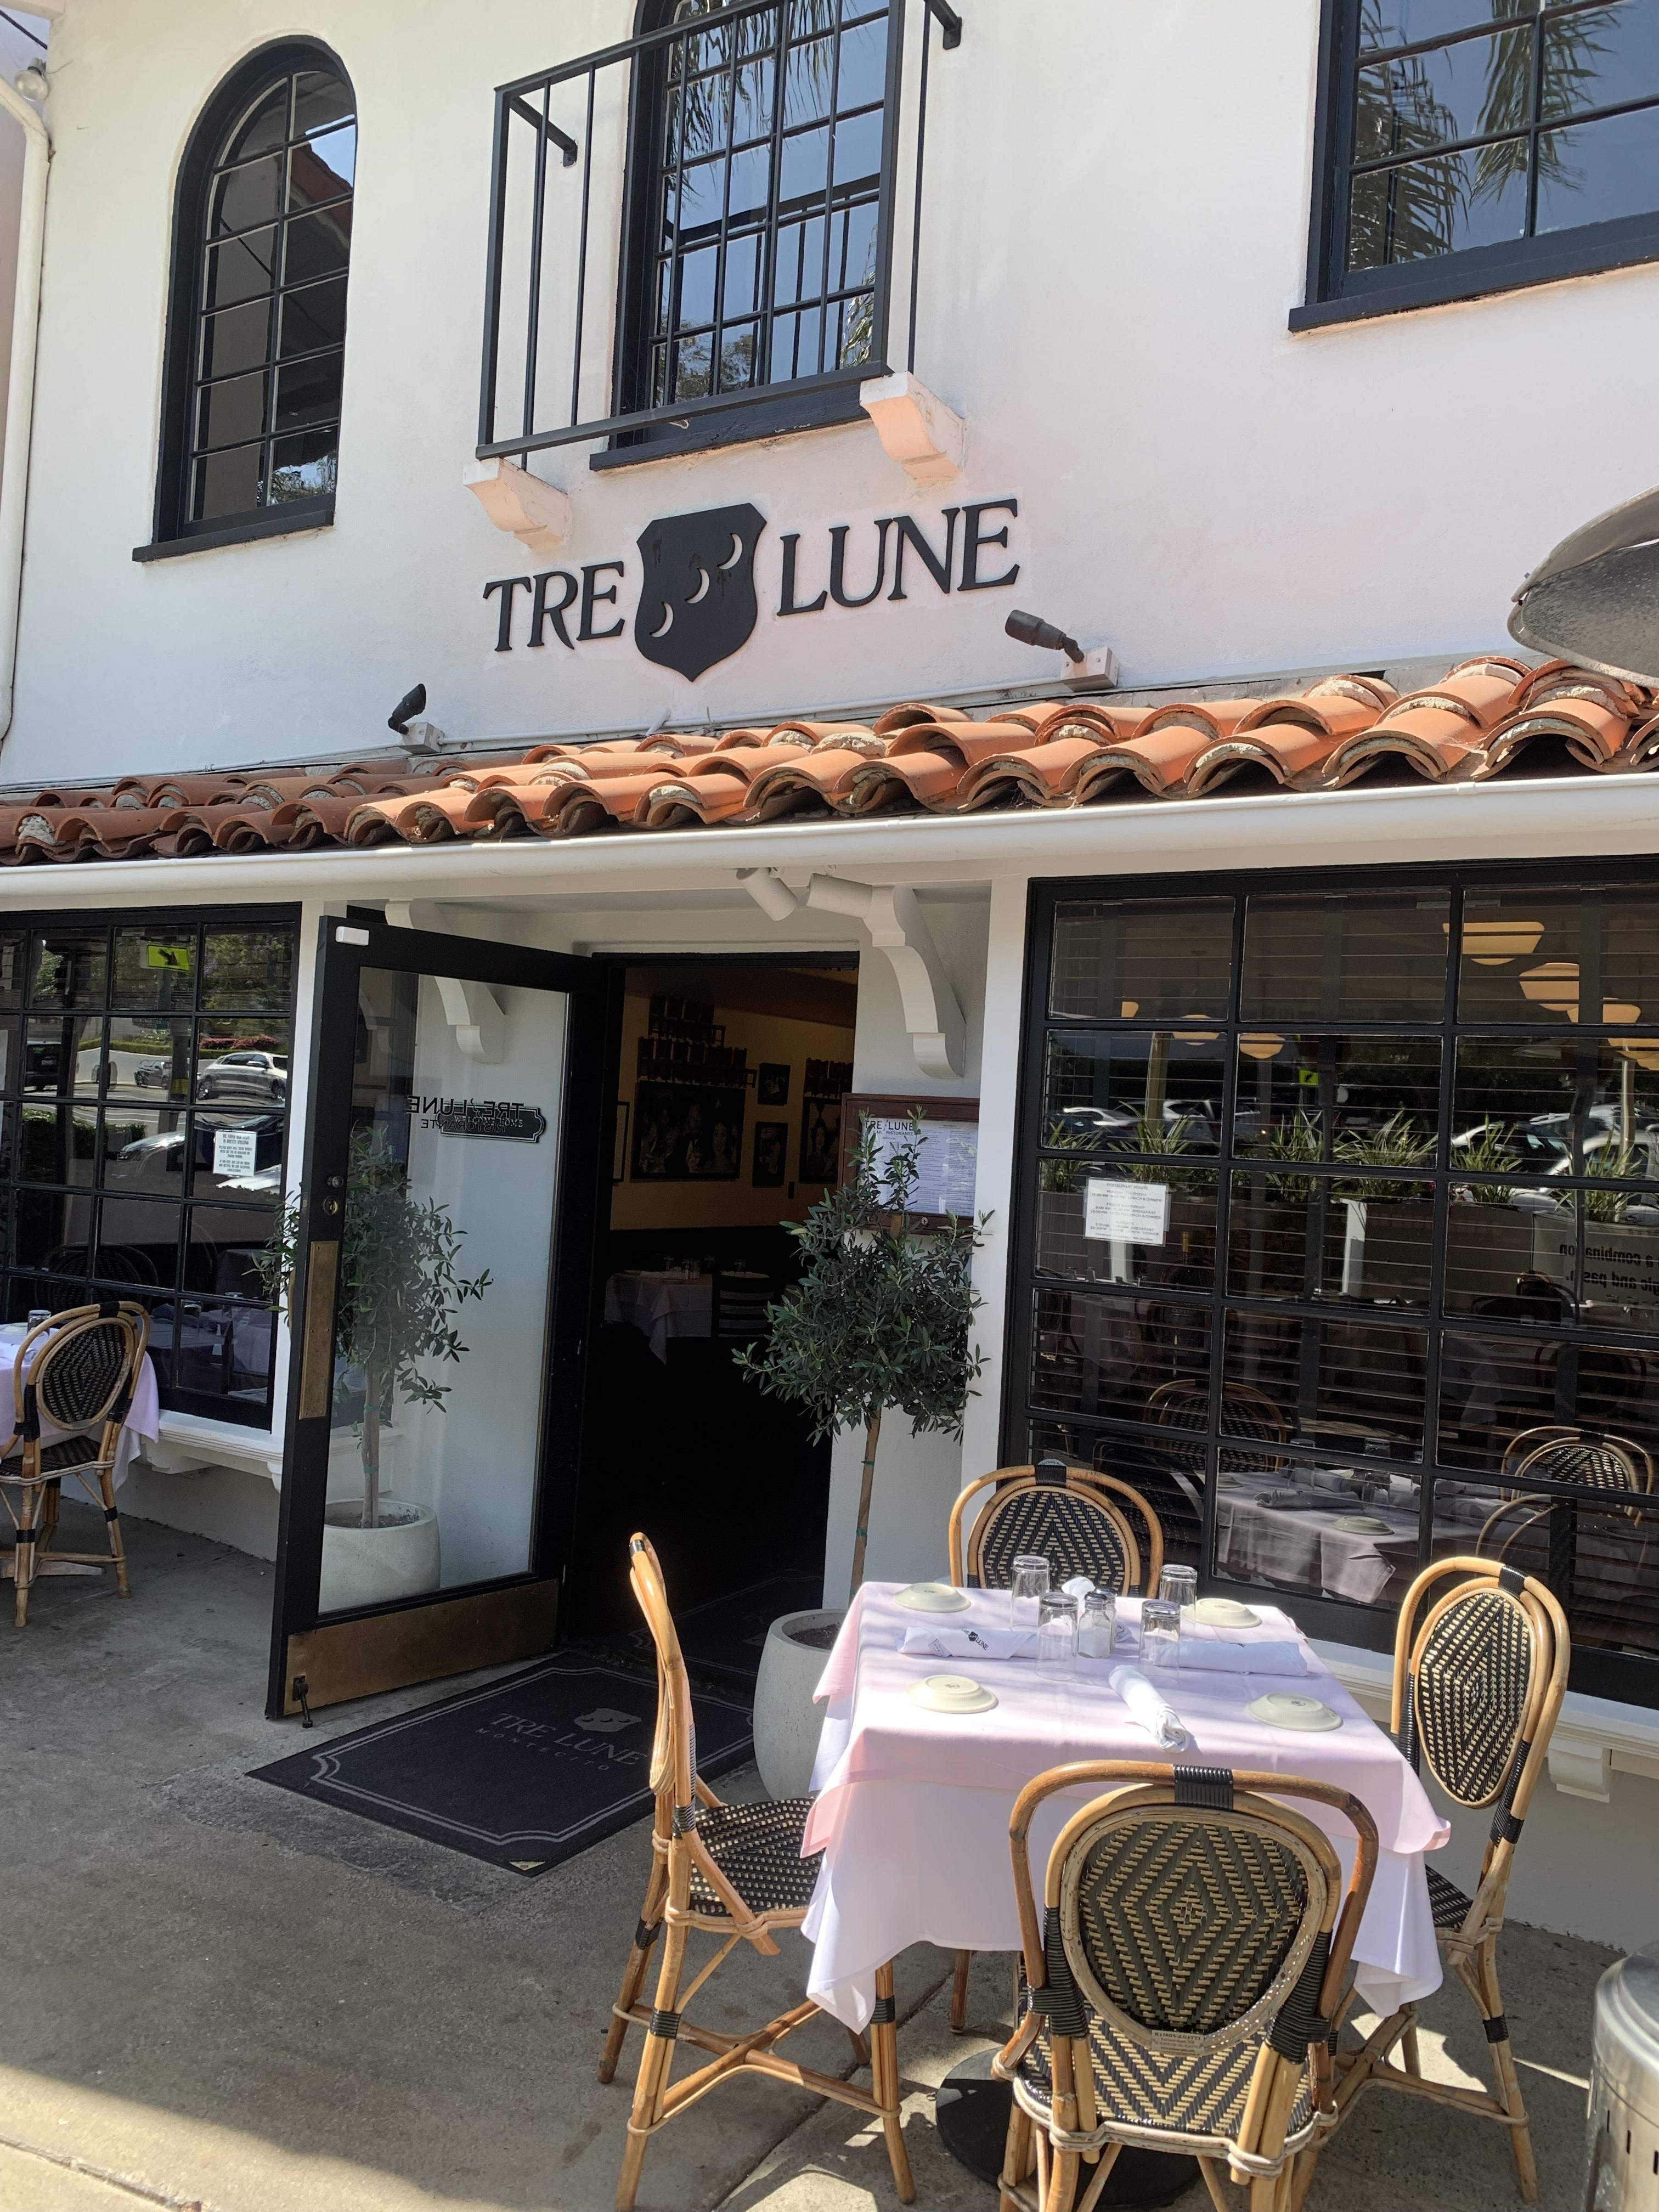 The exterior of Tre Lune restaurant in Montecito, California